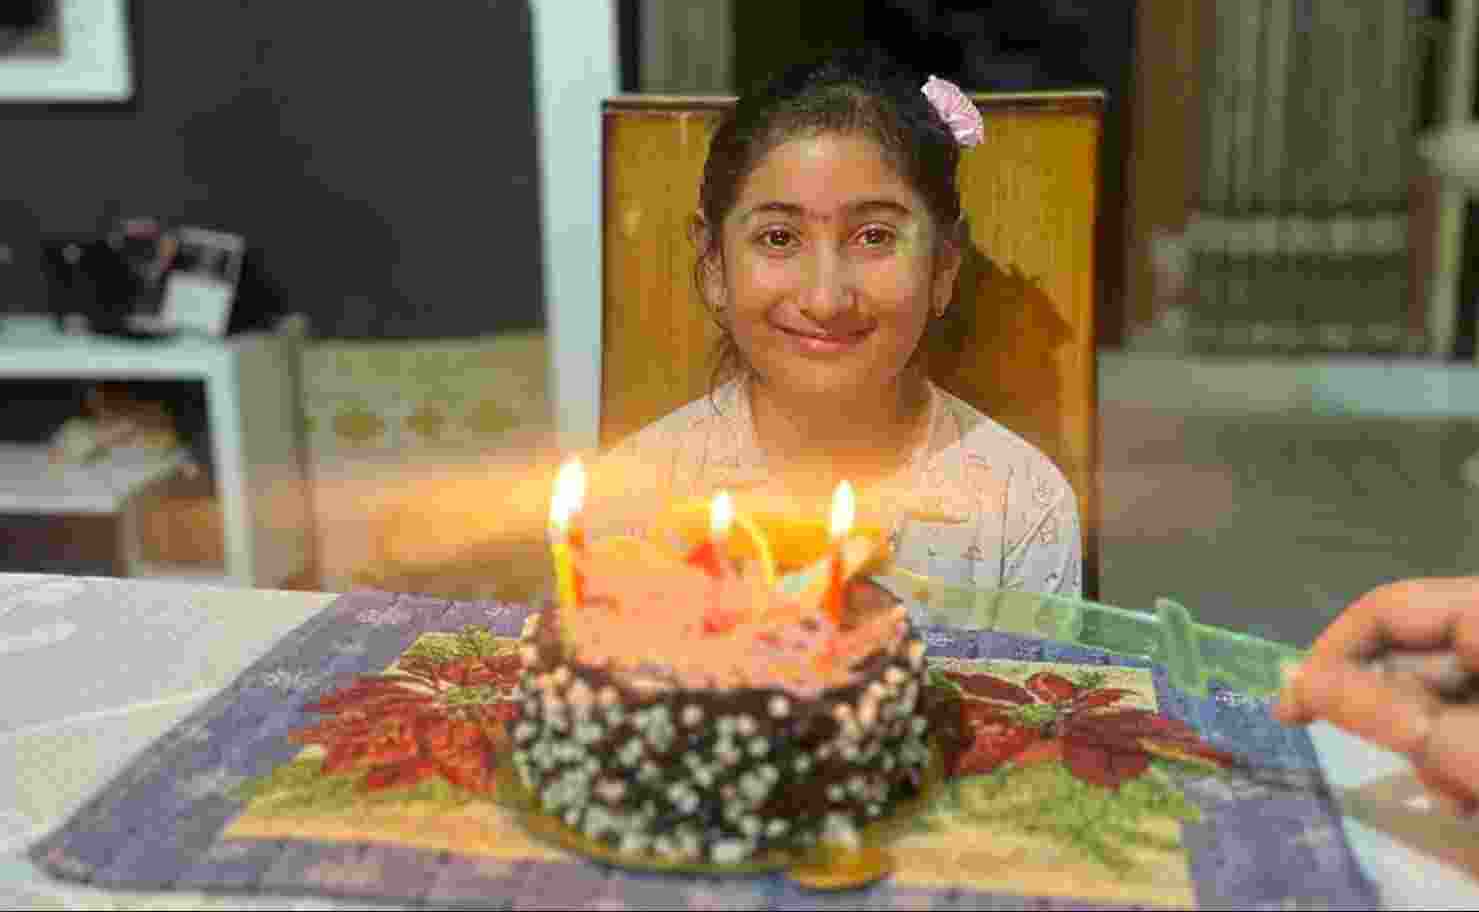 10-year-old Punjab girl dies after eating birthday cake